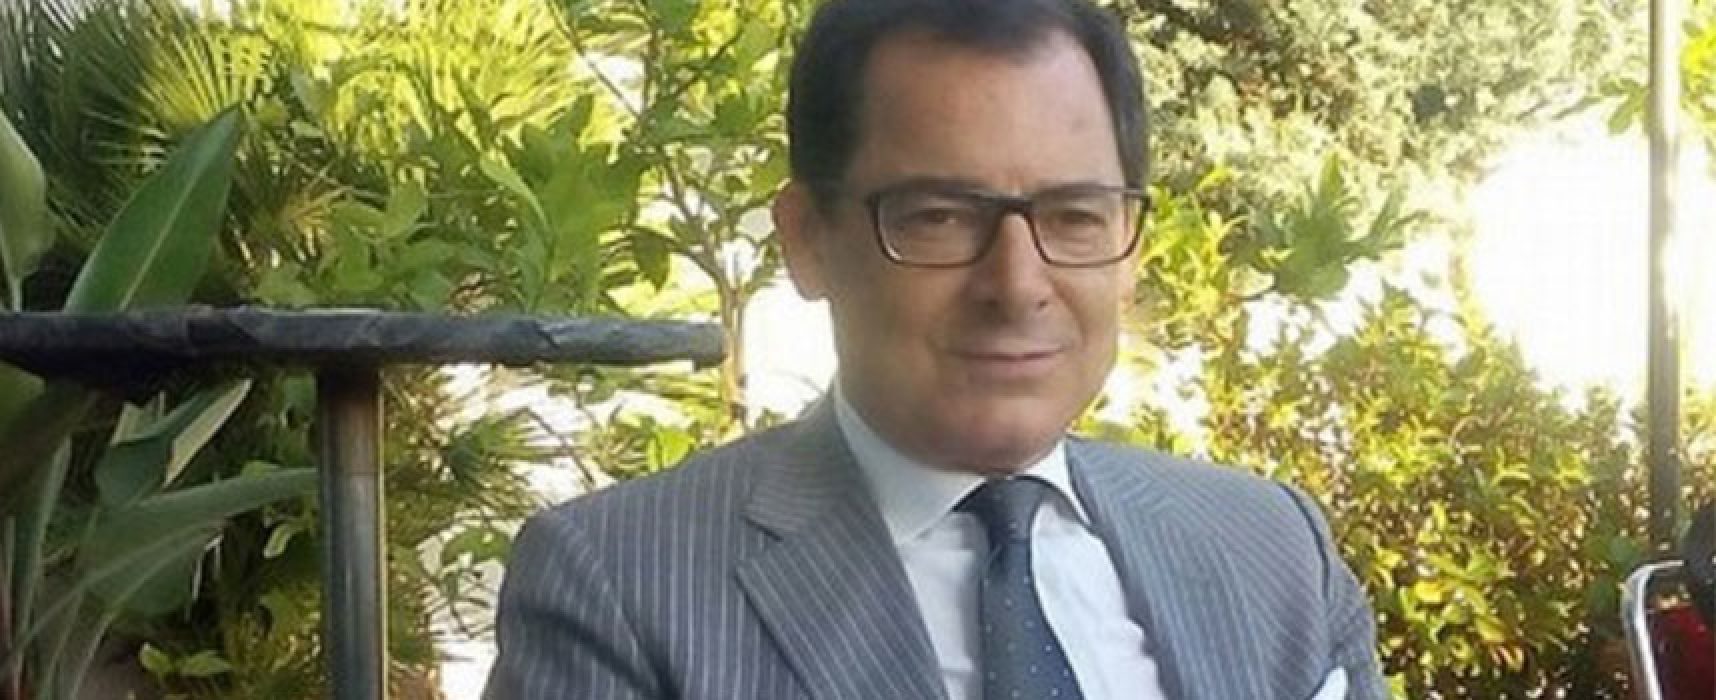 Il magistrato Giannicola Sinisi presenta a Bisceglie il suo libro “Senza sbarre”